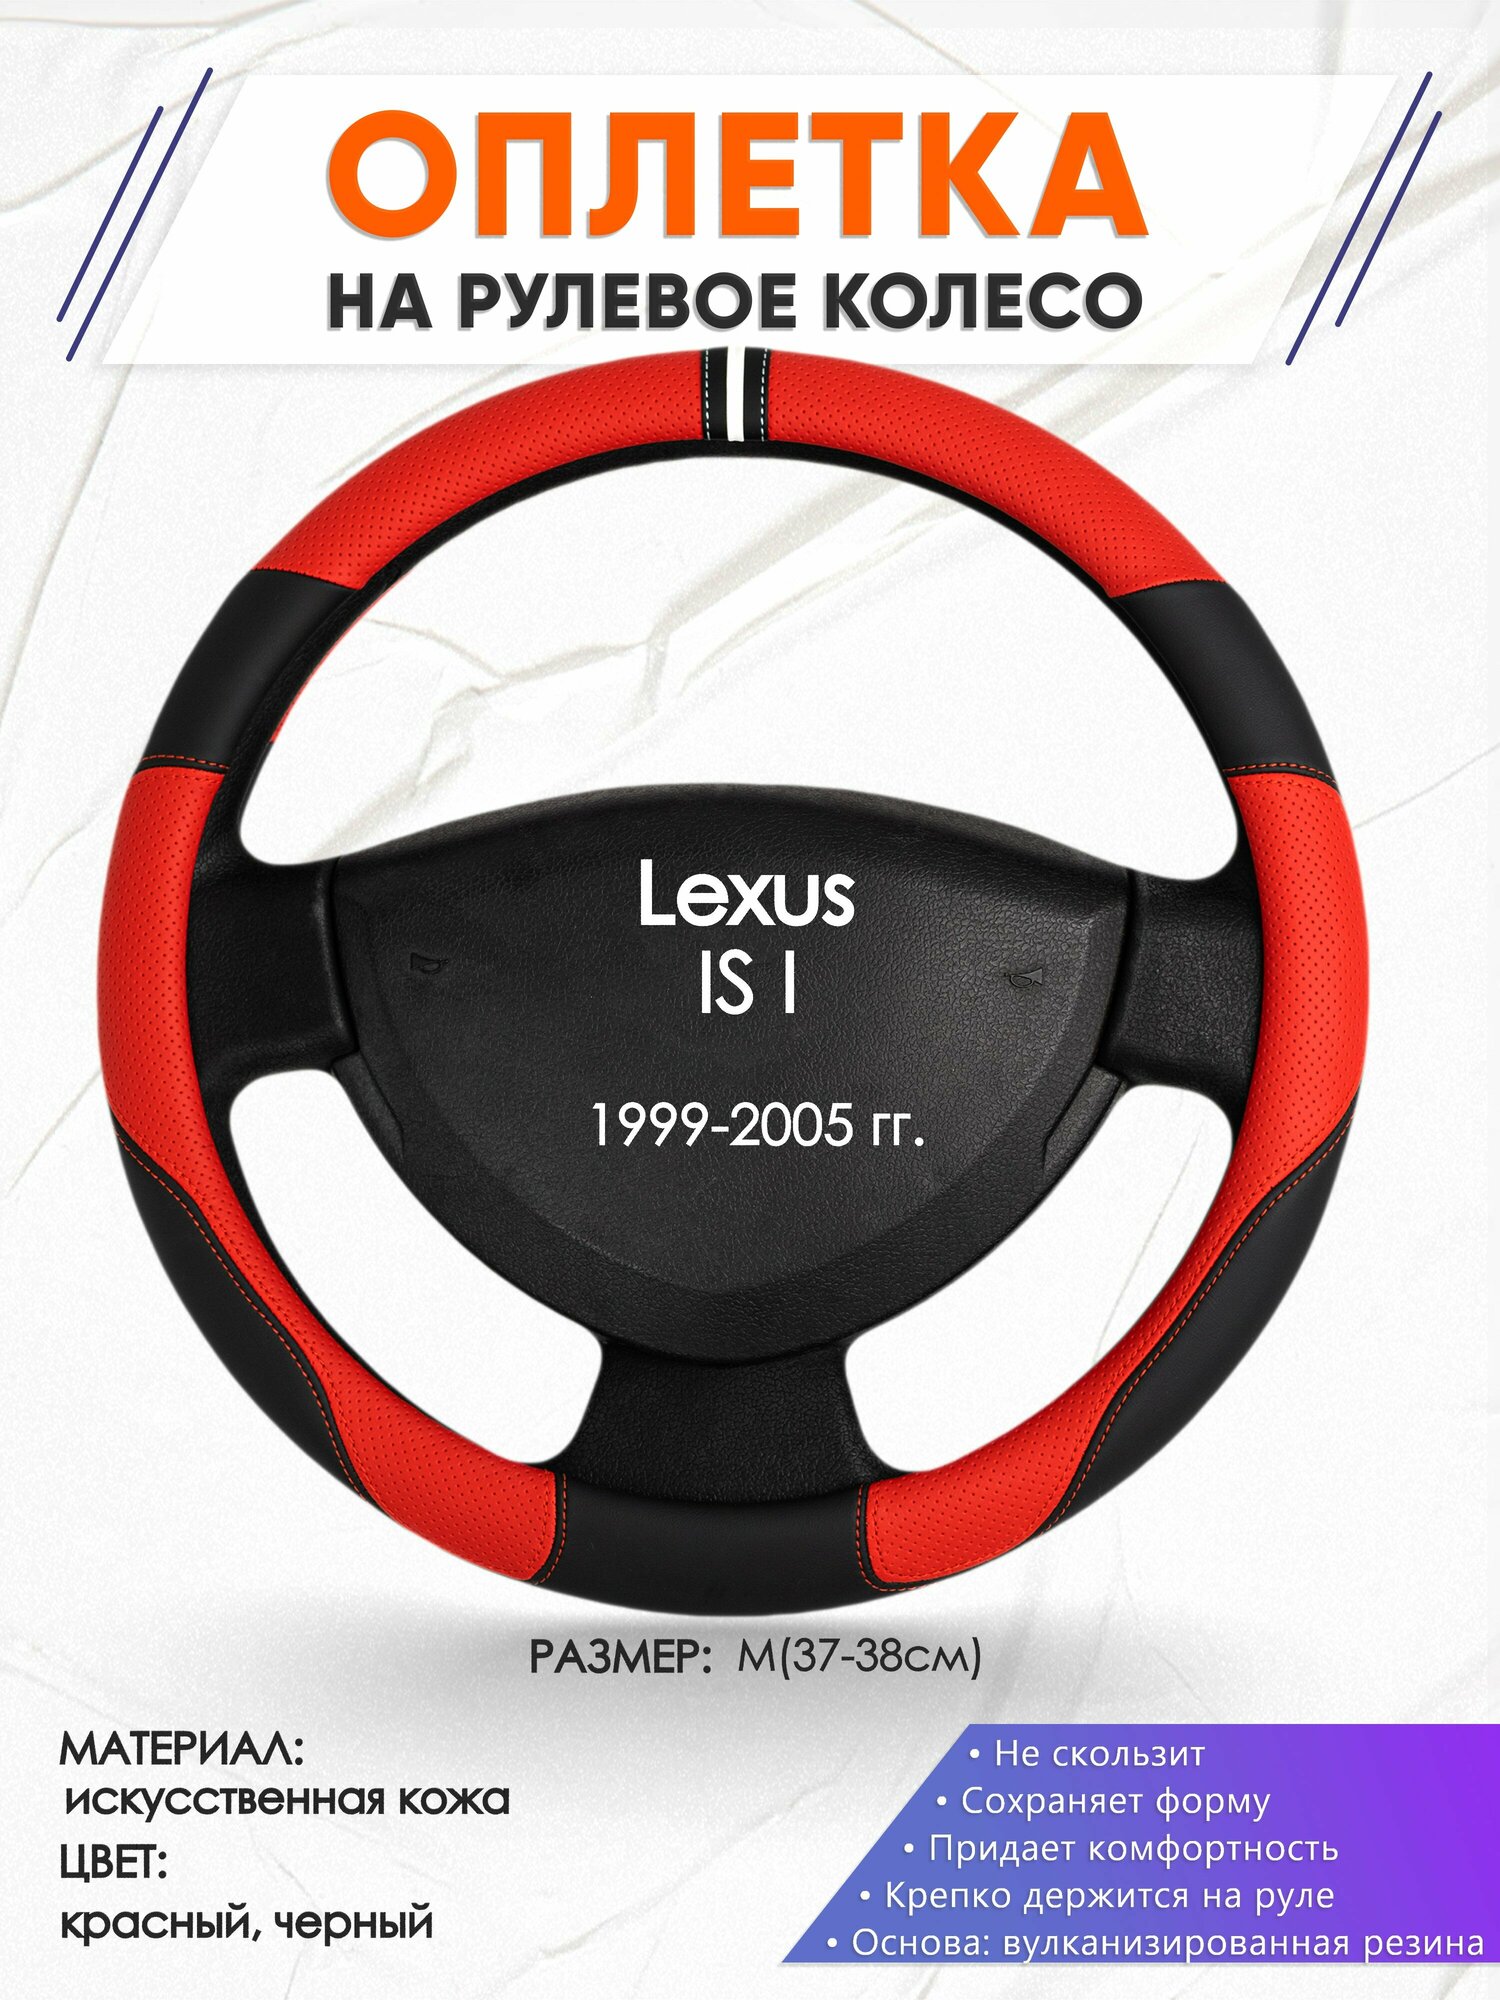 Оплетка наруль для Lexus IS I(Лексус ИС 1) 1999-2005 годов выпуска, размер M(37-38см), Искусственная кожа 04